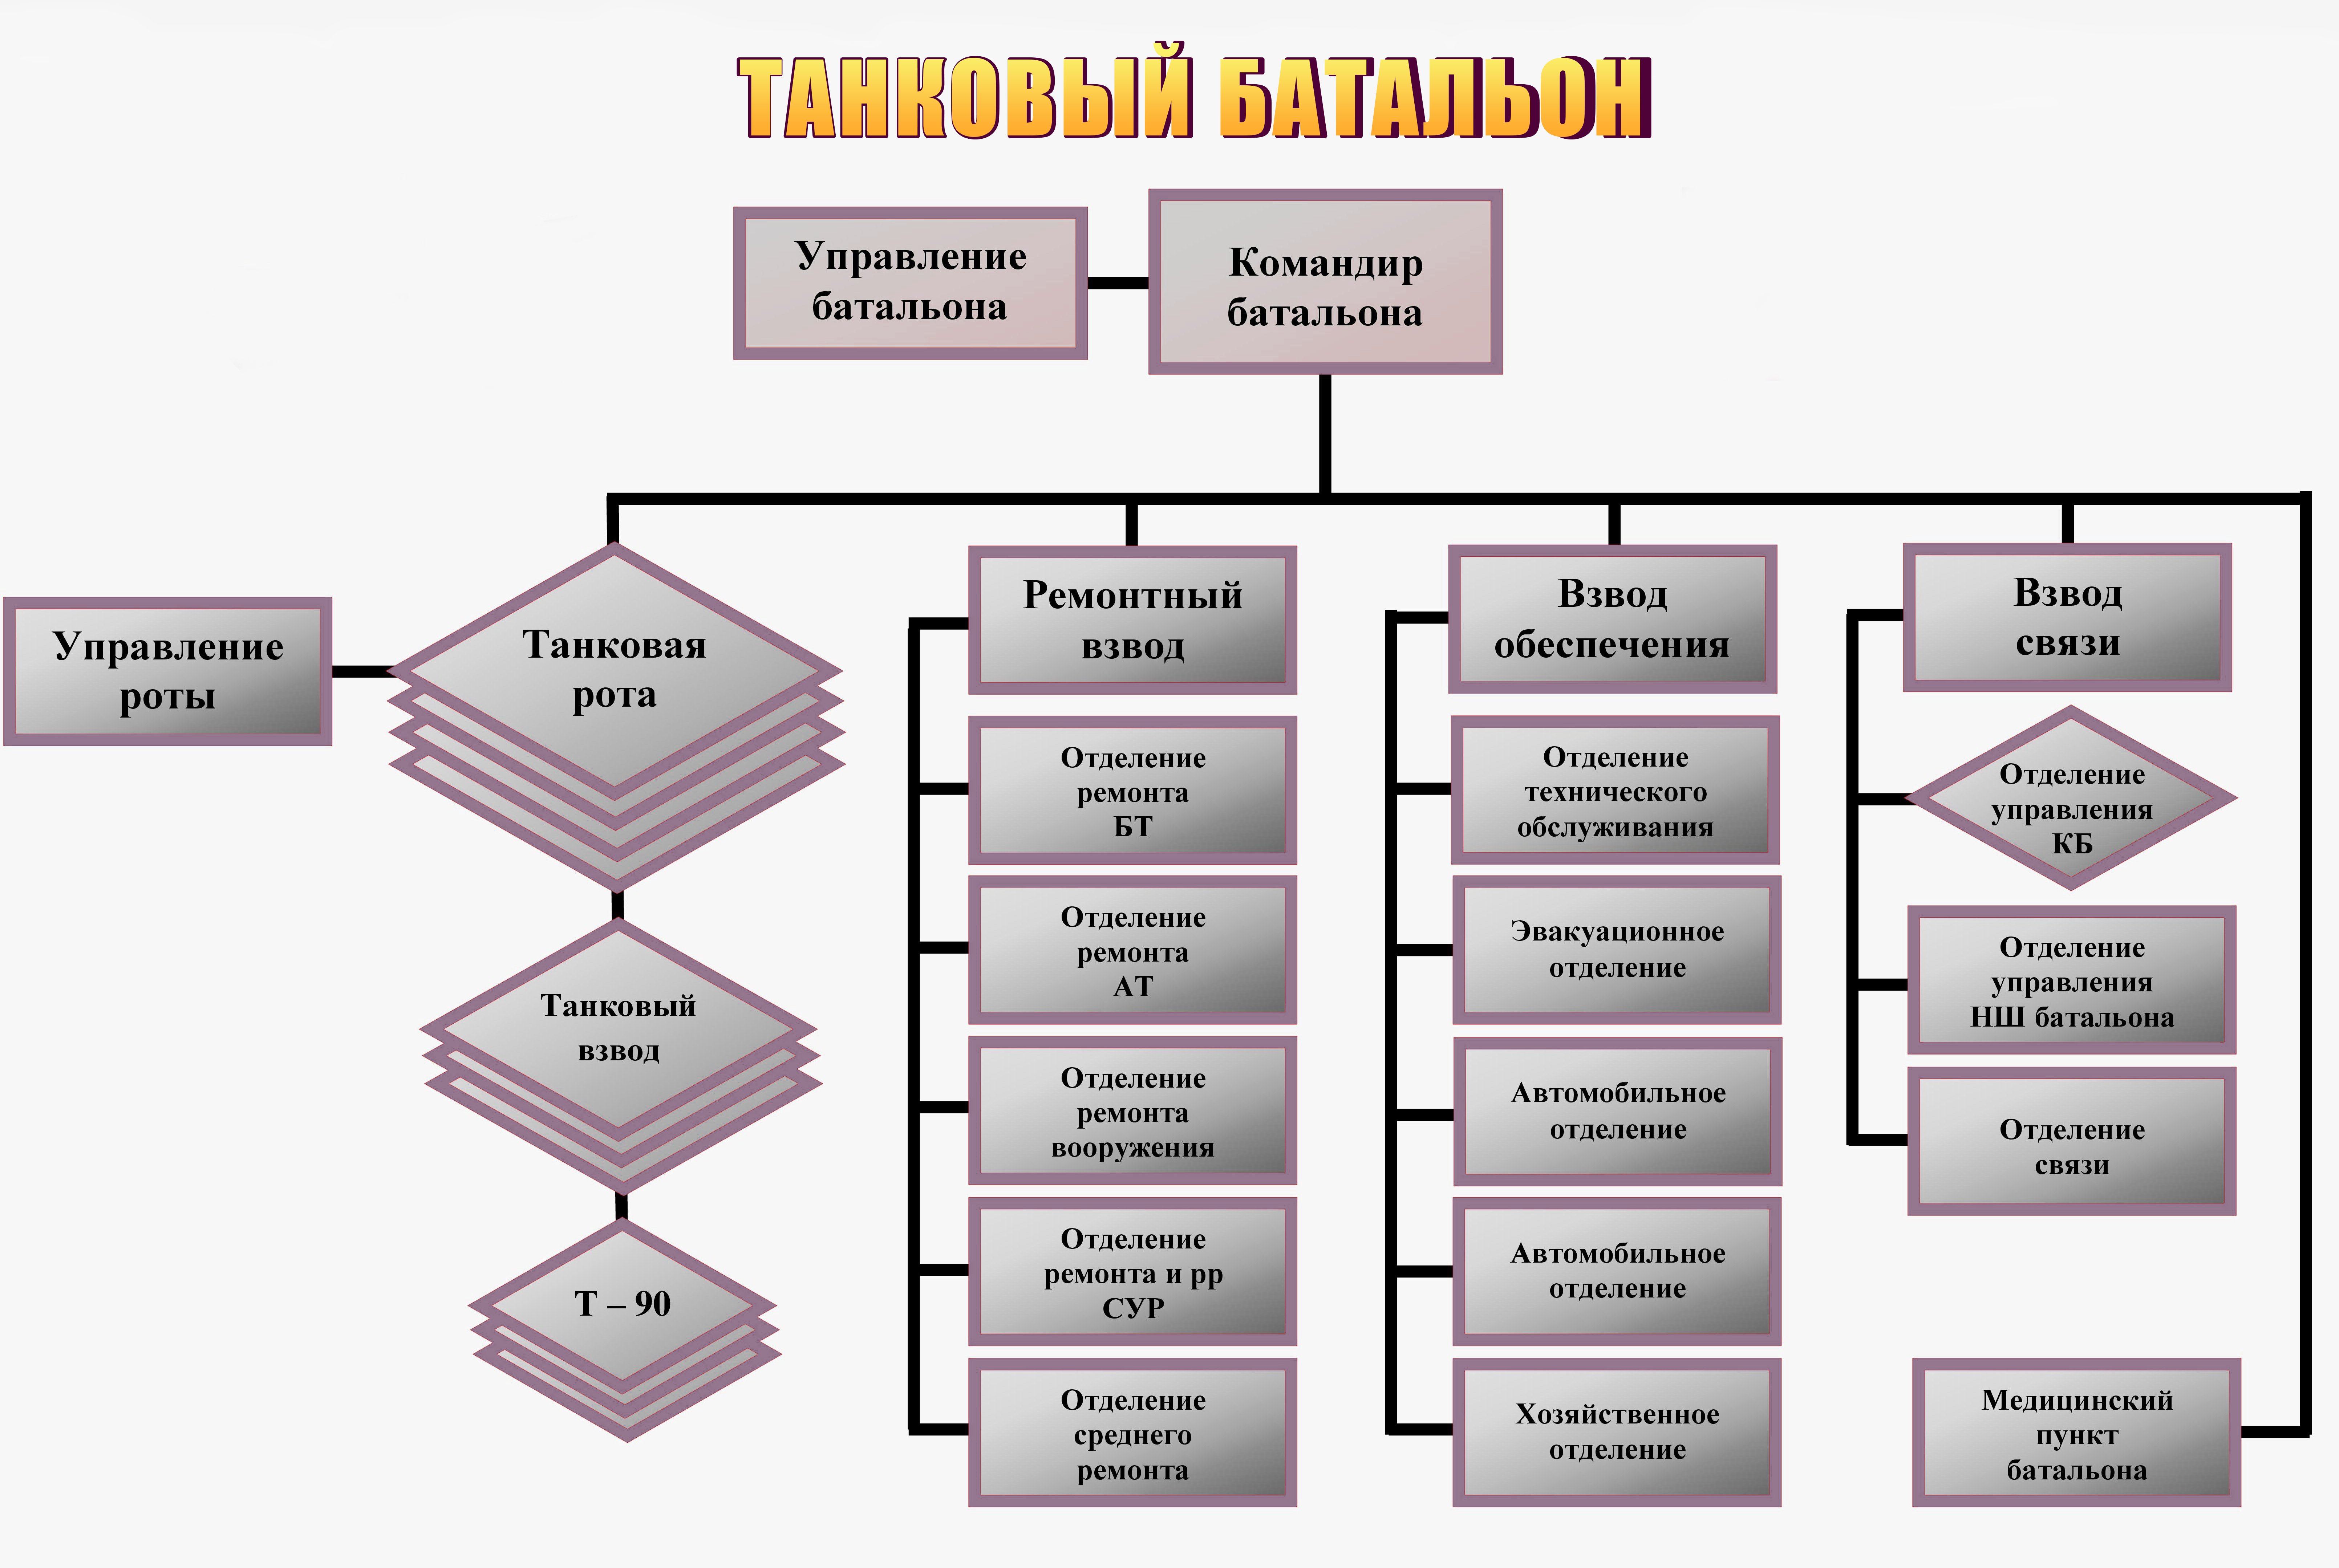 Организационная штатная структура танкового батальона РФ